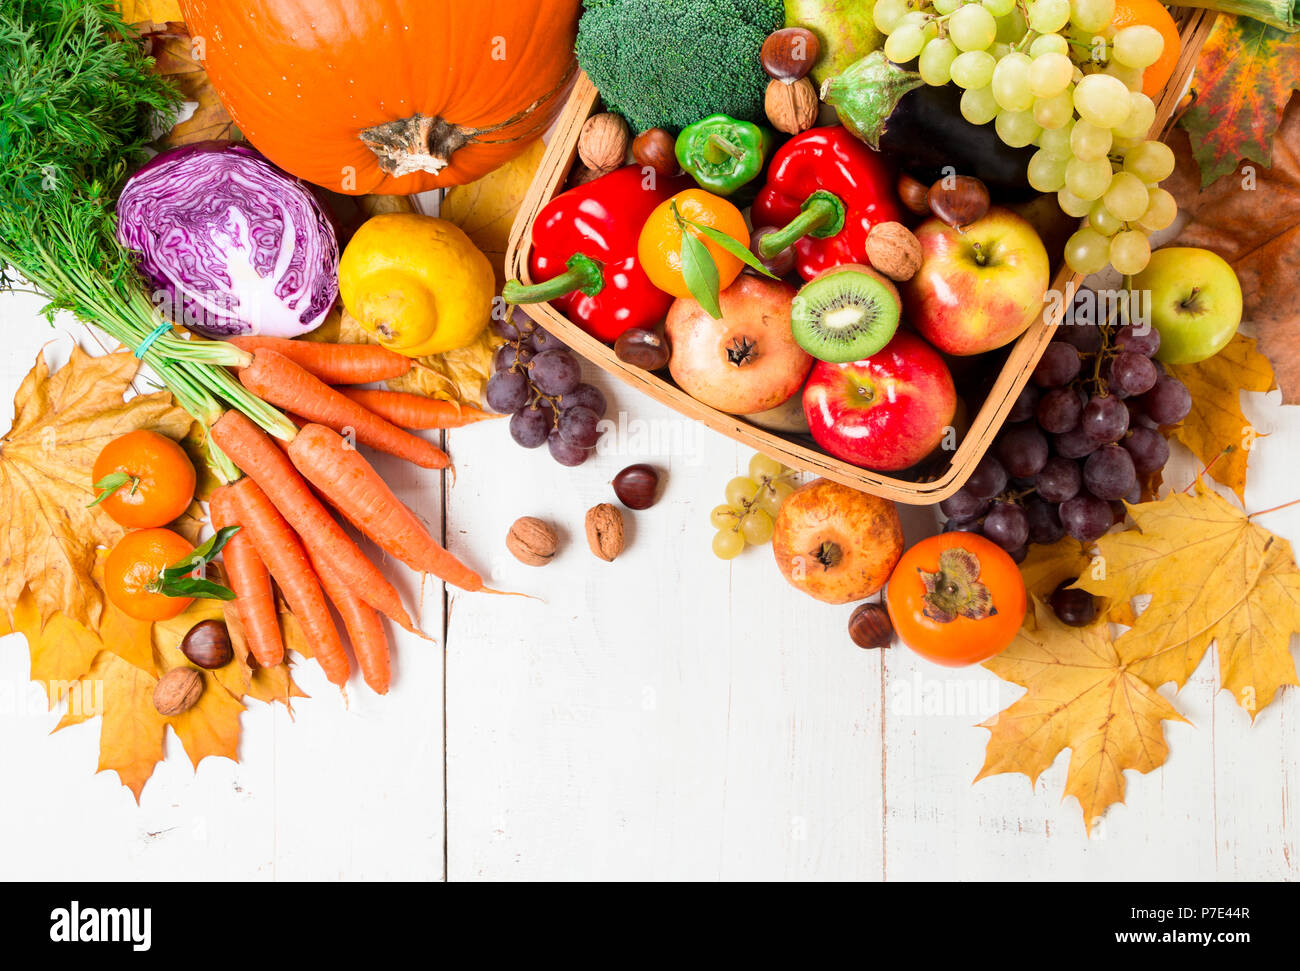 Surtido de verduras de otoño fresco y maduro y frutas en una mesa de madera rústica. Vista superior Foto de stock